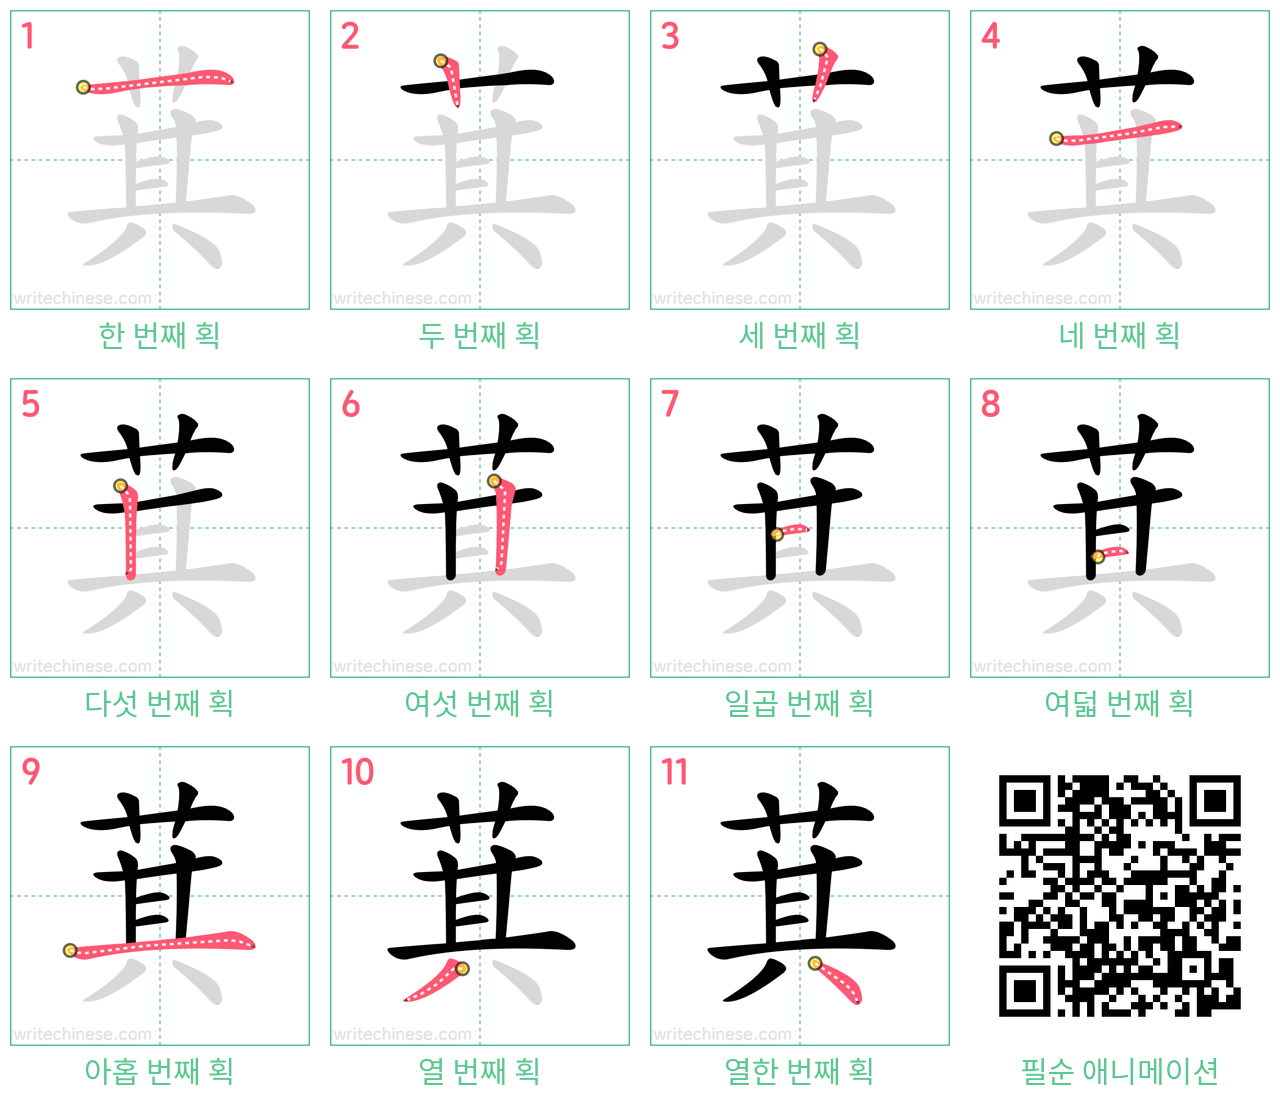 萁 step-by-step stroke order diagrams